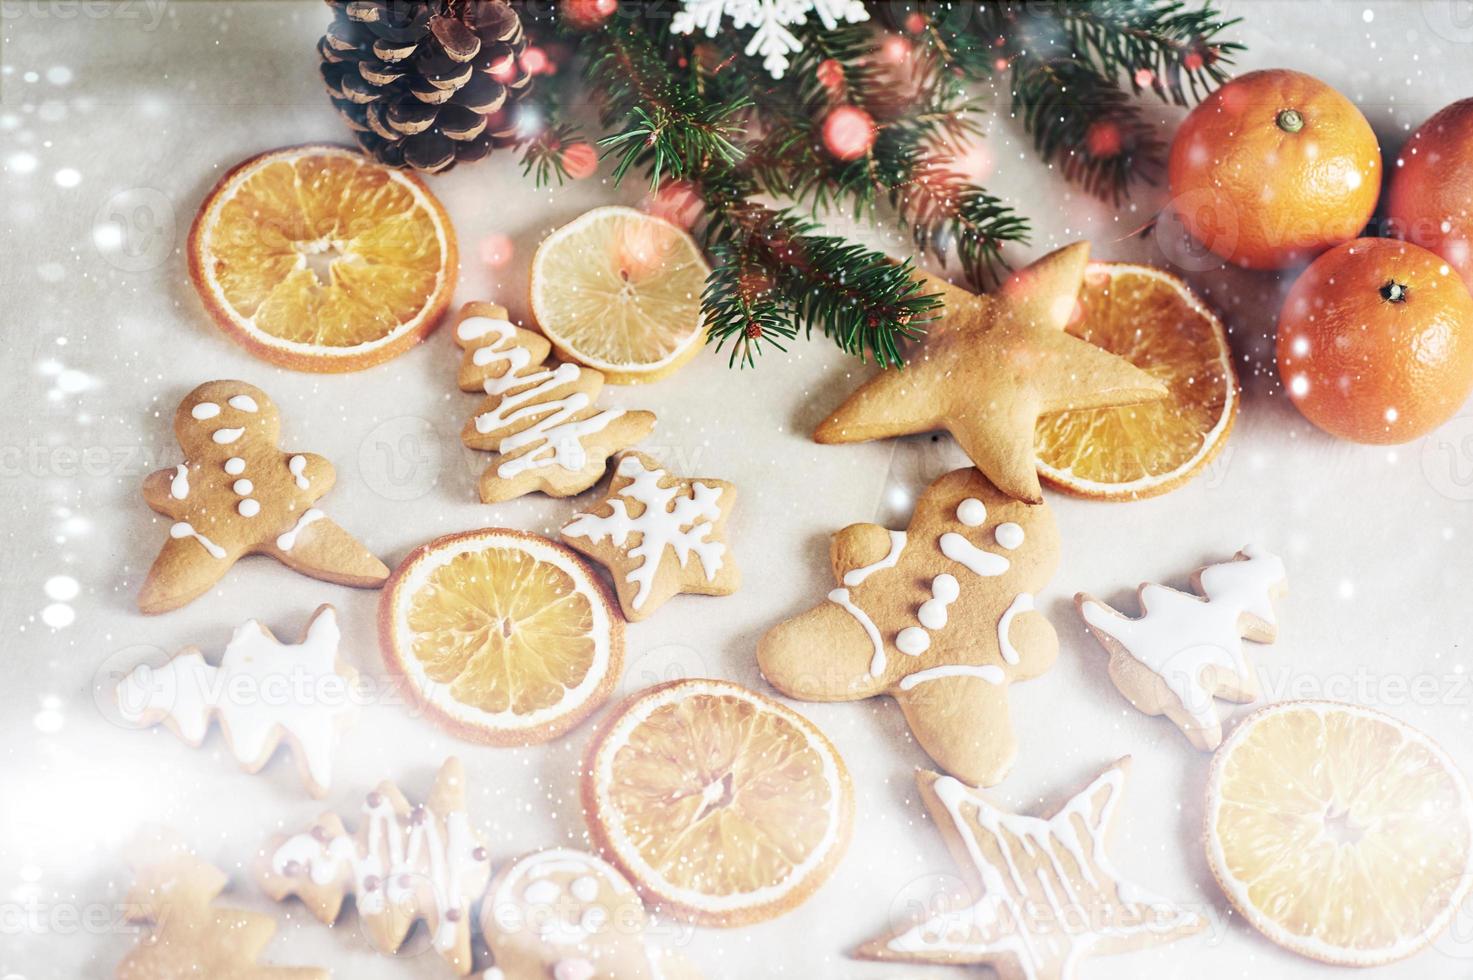 galletas de jengibre de navidad y naranja seca y especias en mesa blanca. sillas árboles de navidad, conos y adornos navideños foto